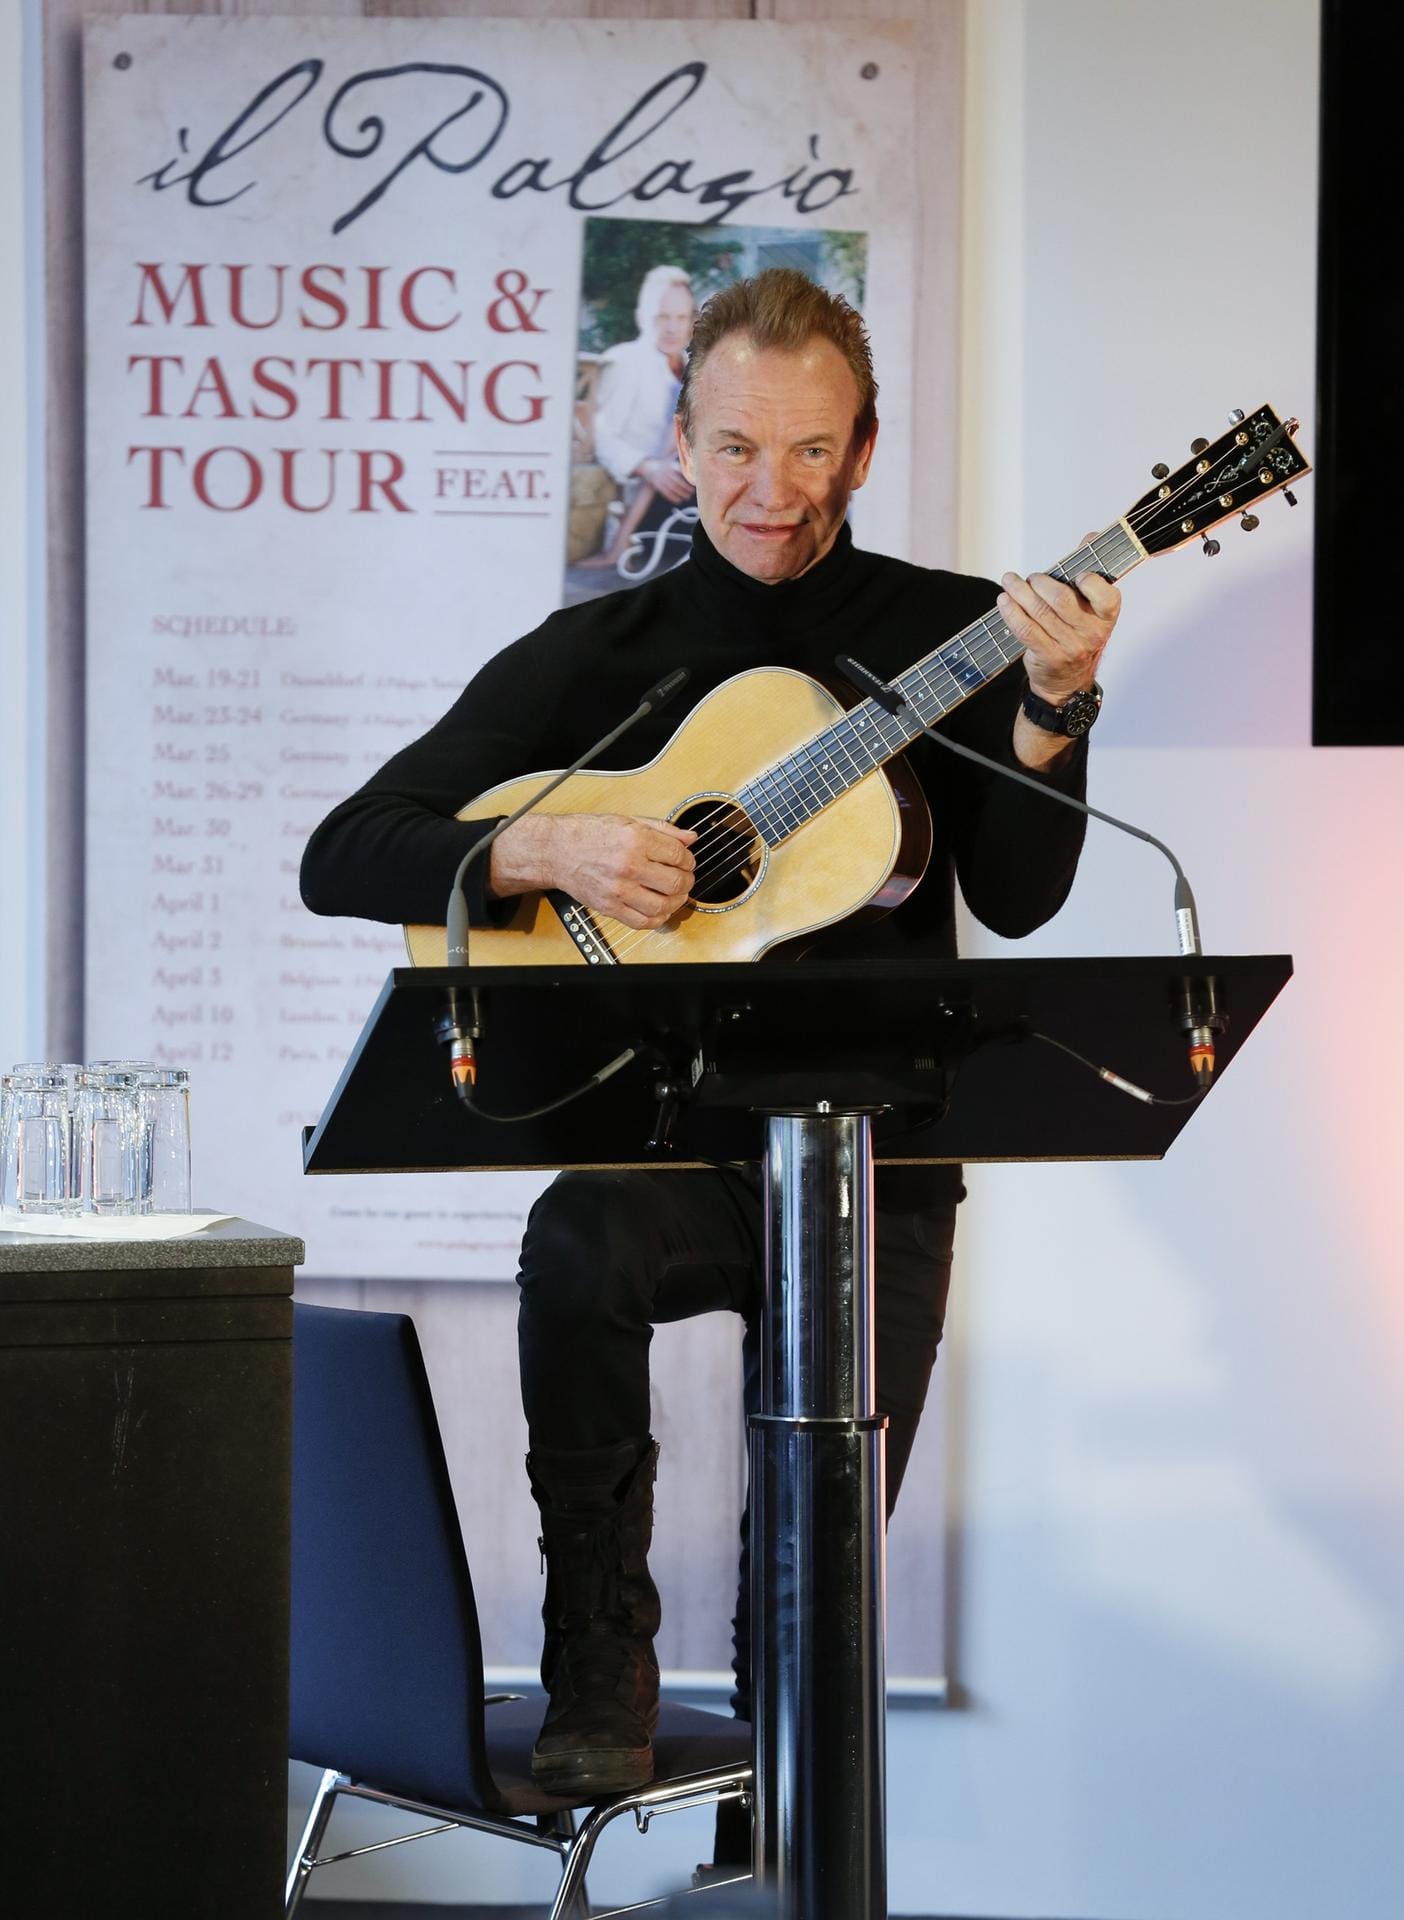 Sting brachte seine Gitarre mit und spielte für die Gäste drei Songs – darunter auch den Police-Klassiker "Message in a bottle".